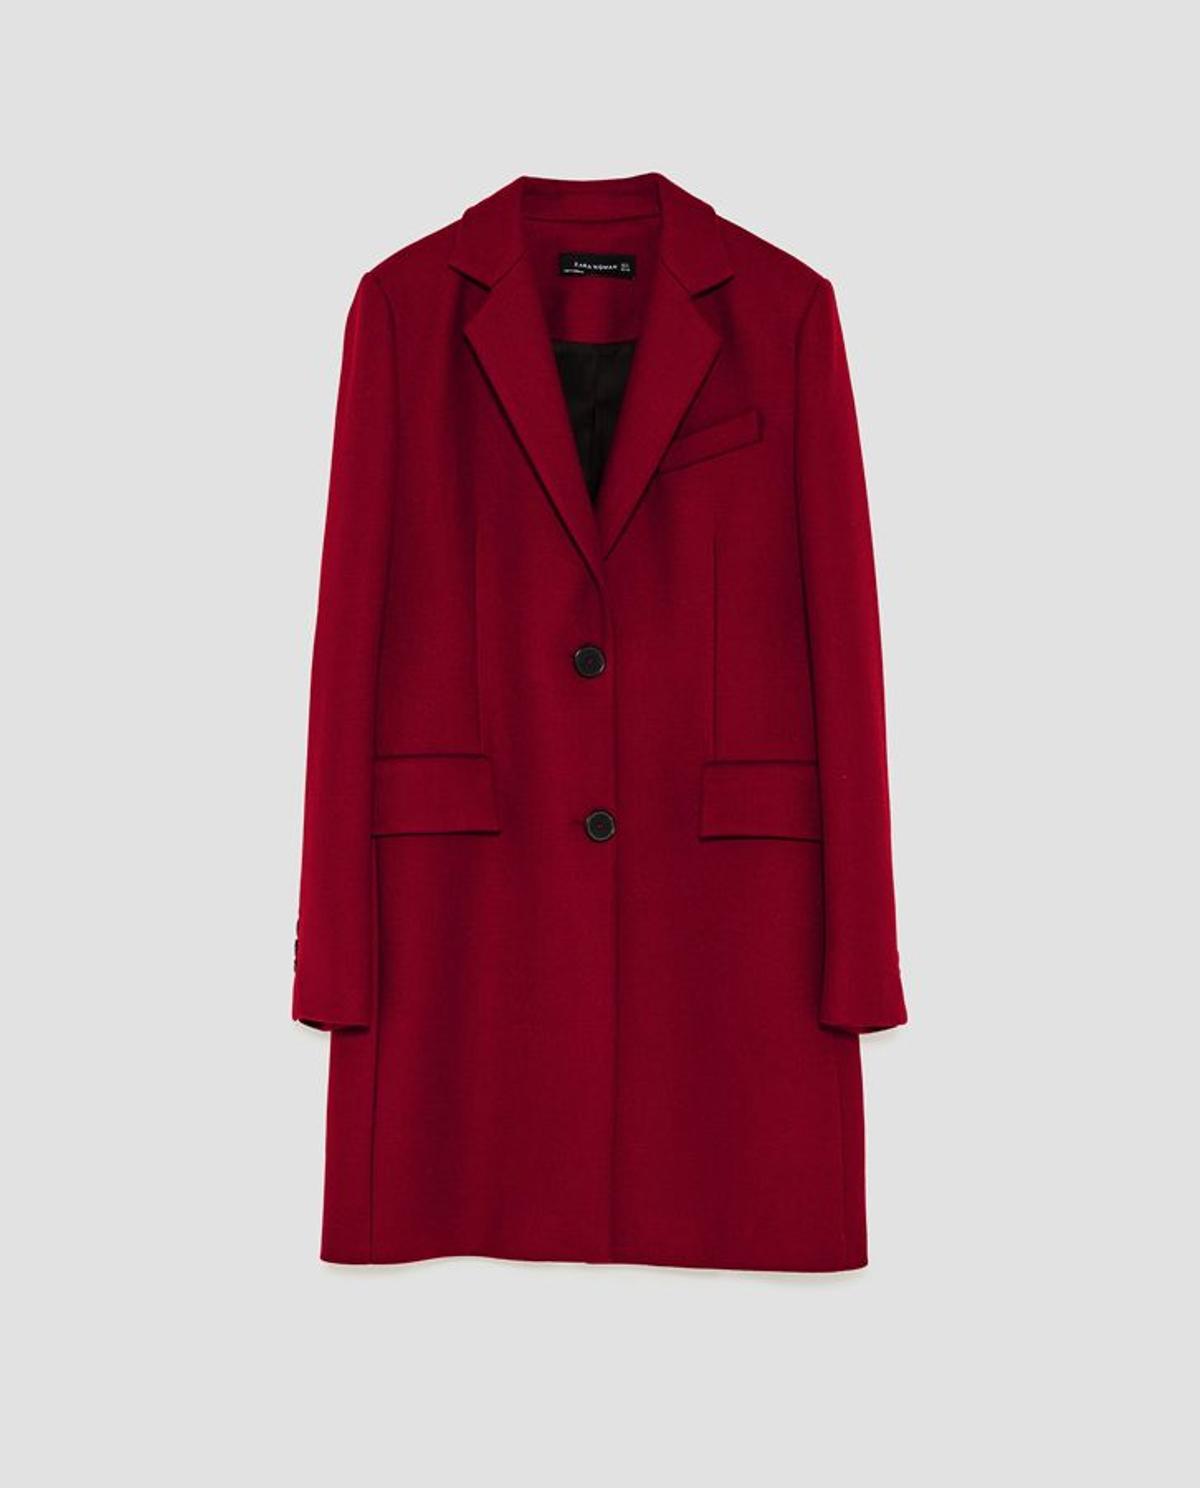 'Shopping' para el Black Friday: abrigo masculino burdeos, de Zara